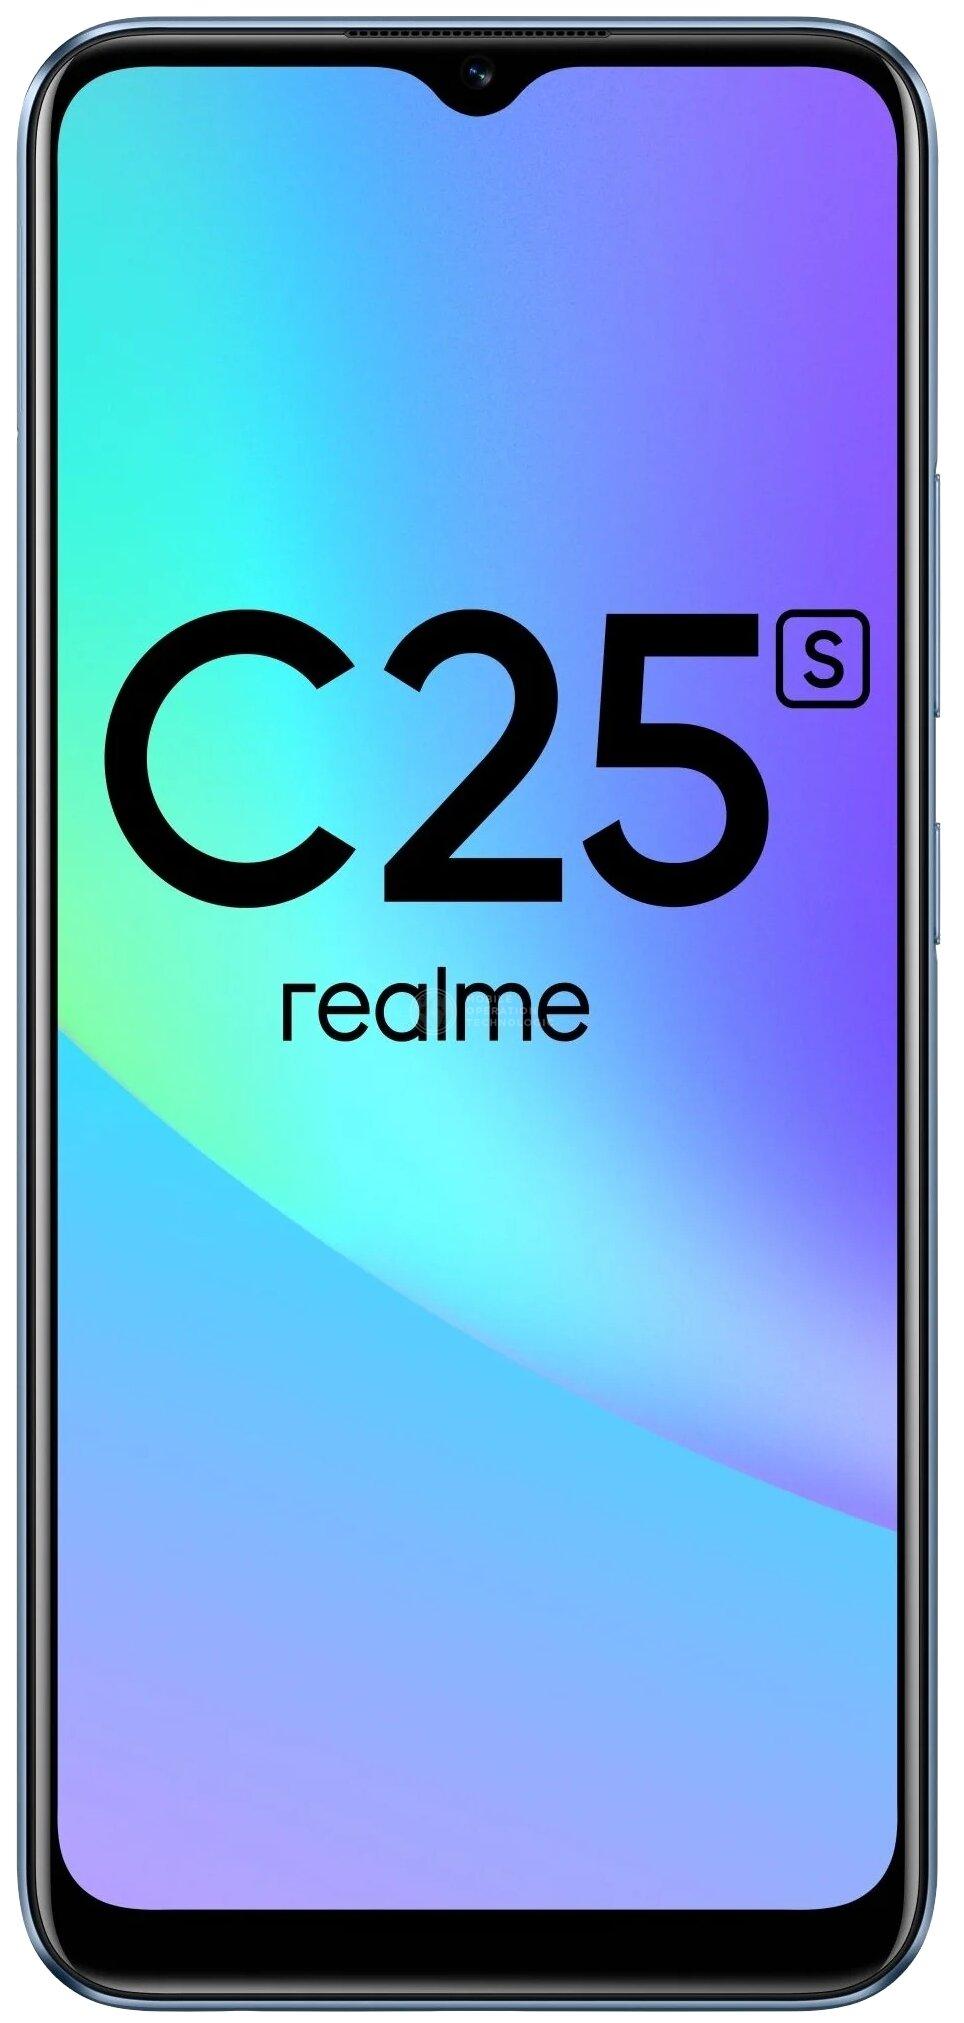 C25S